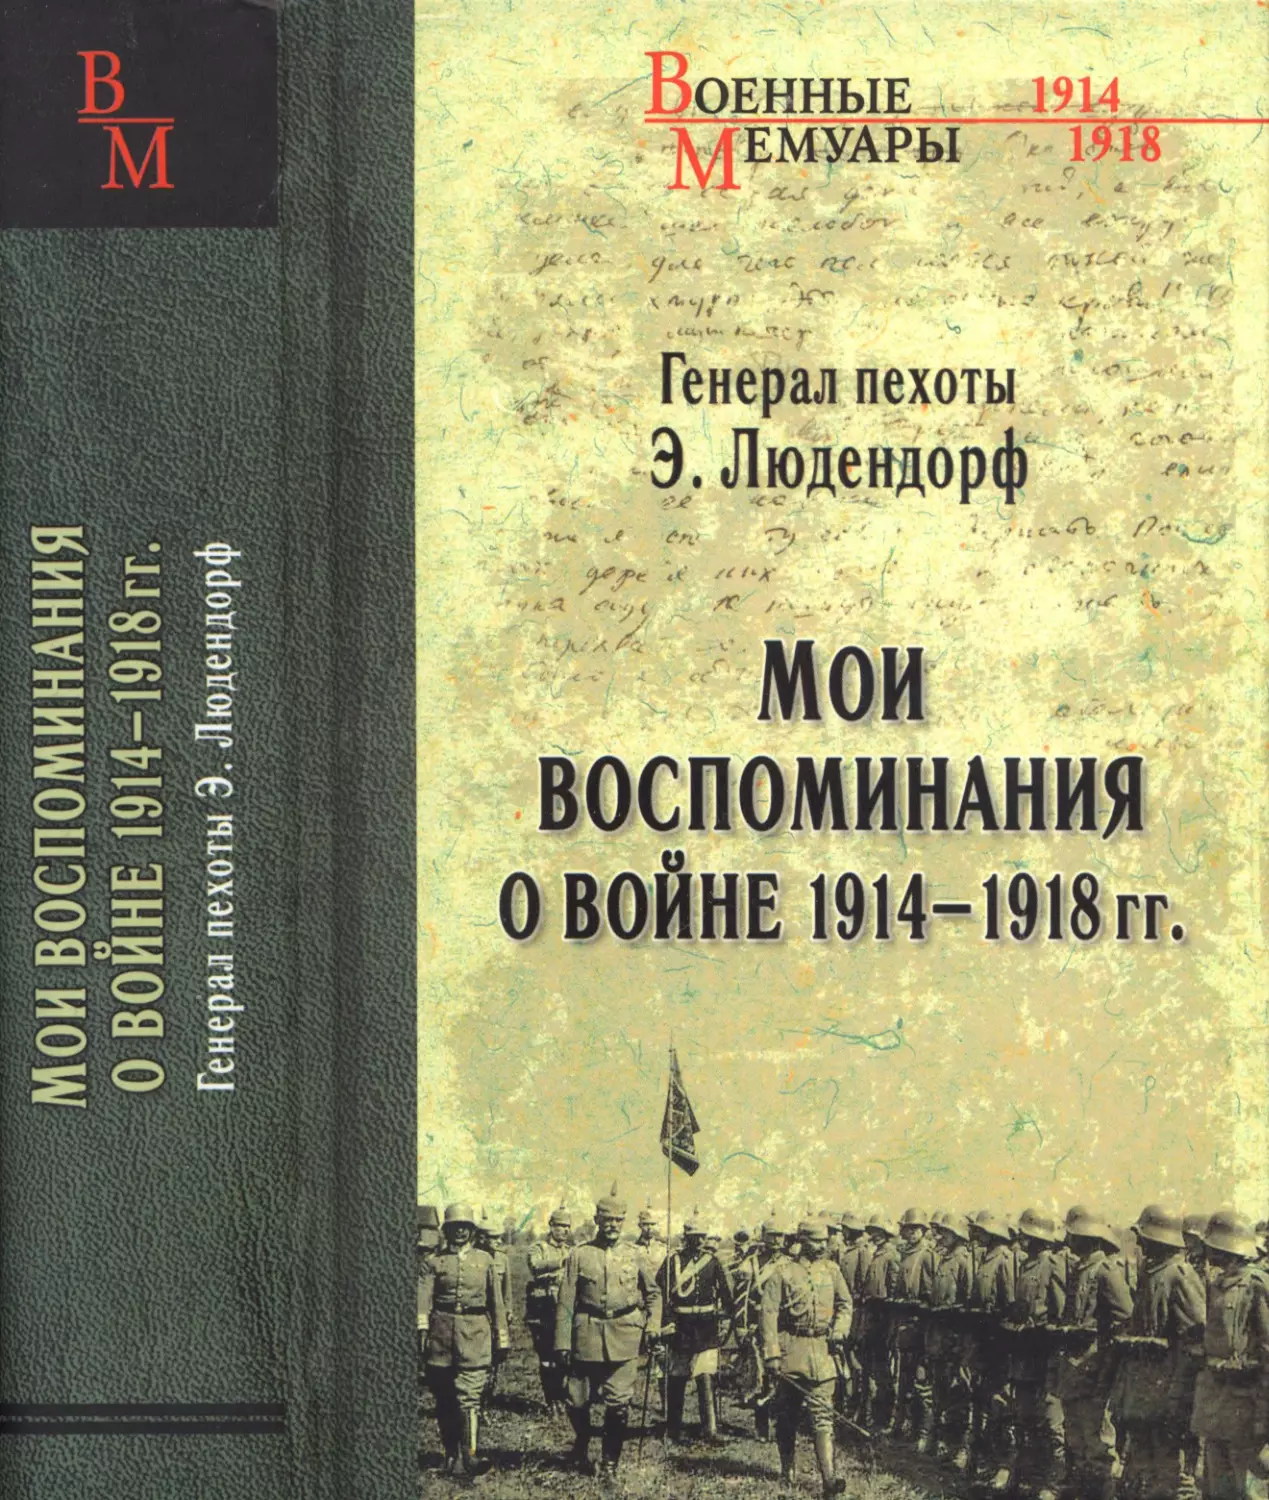 МОИ  ВОСПОМИНАНИЯ  О  ВОЙНЕ  1914-1918  гг